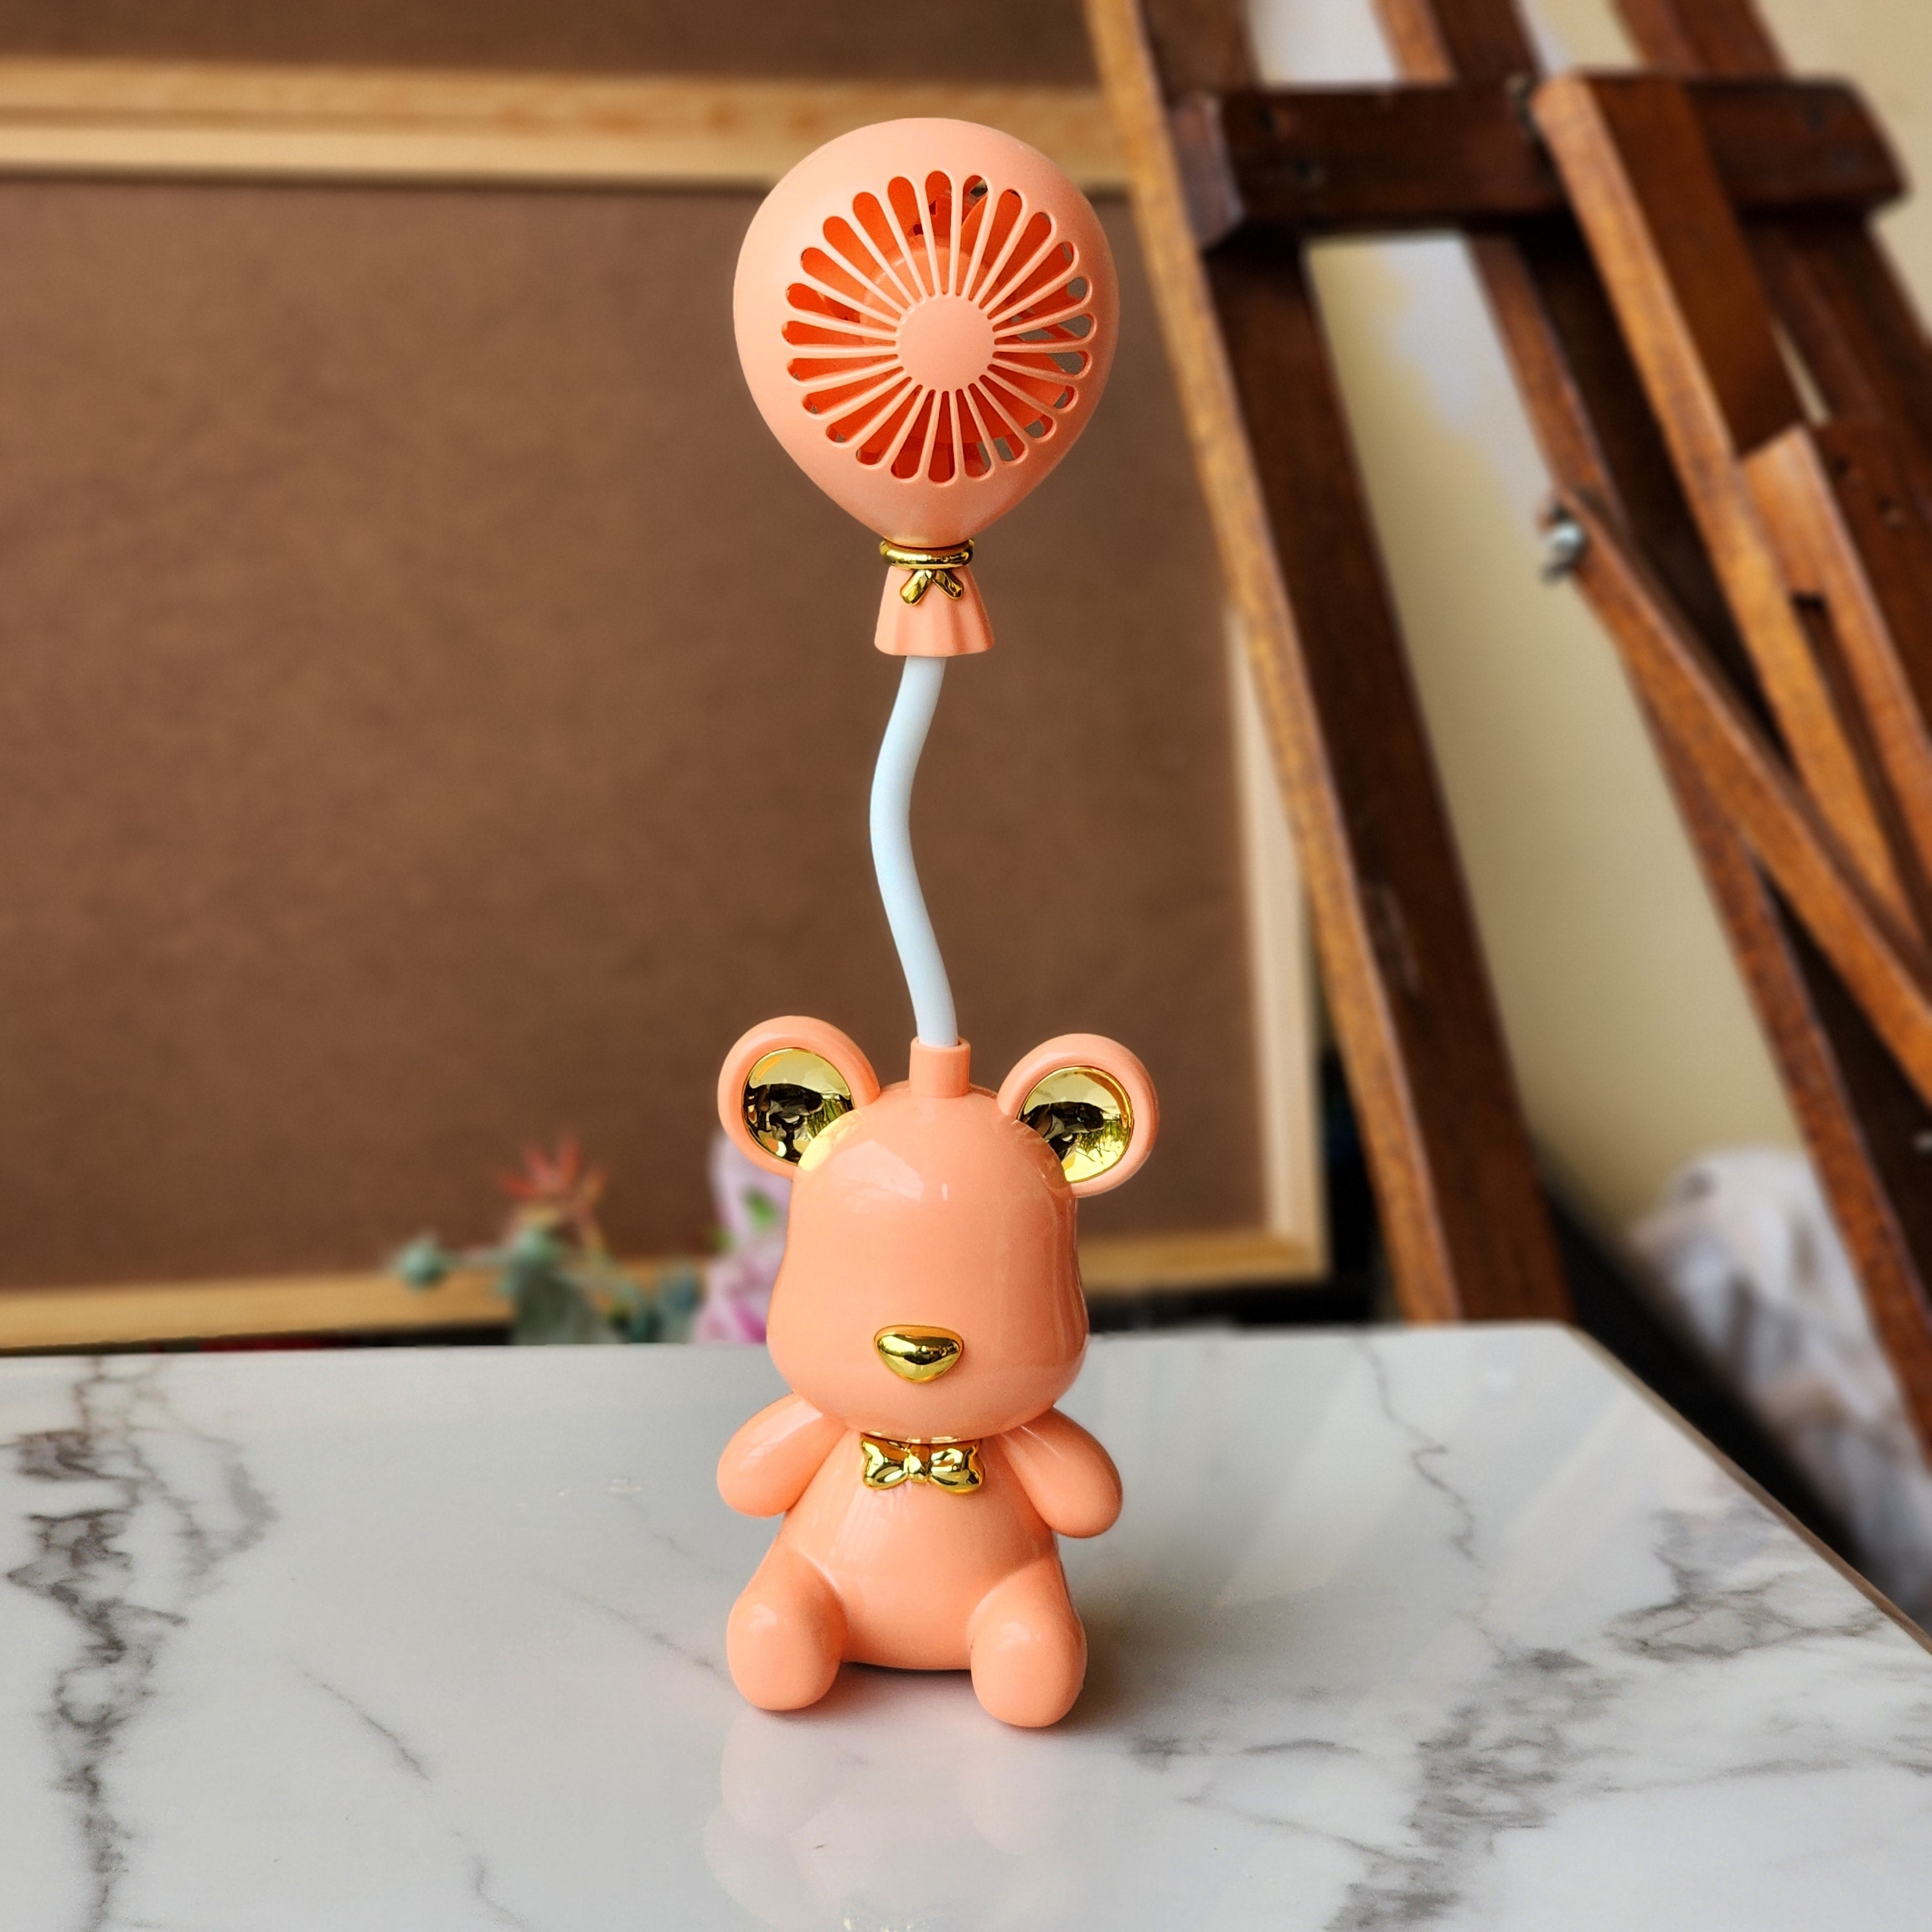 Cute bear mini fan